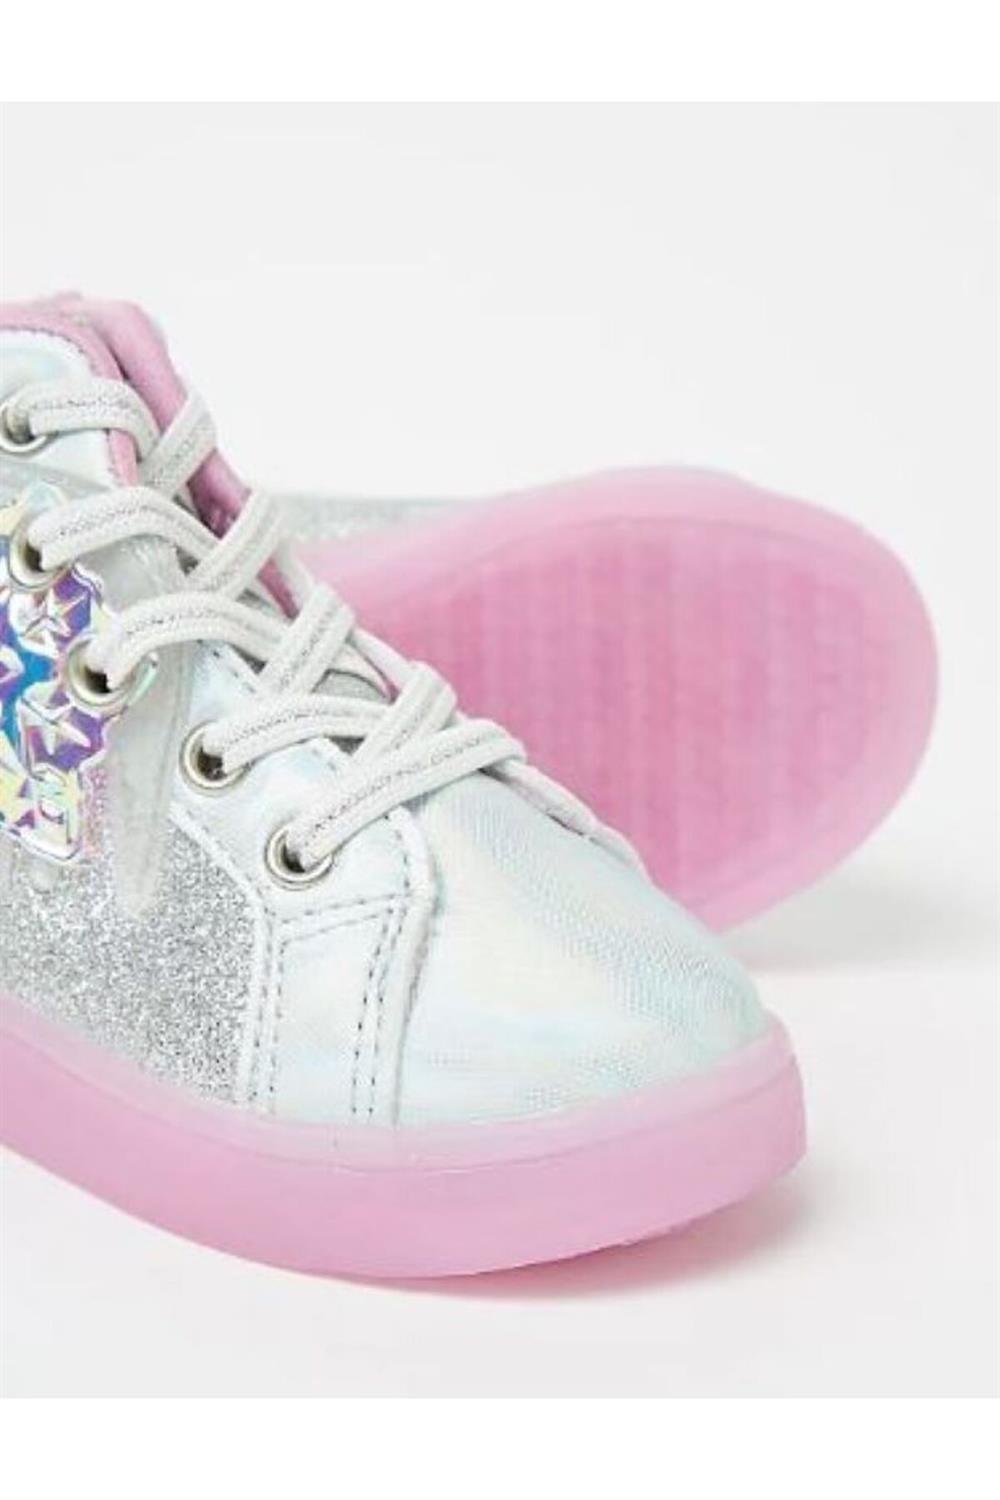 Kız Çocuk Elsa Baskılı Işıklı Boğazlı Spor Ayakkabı